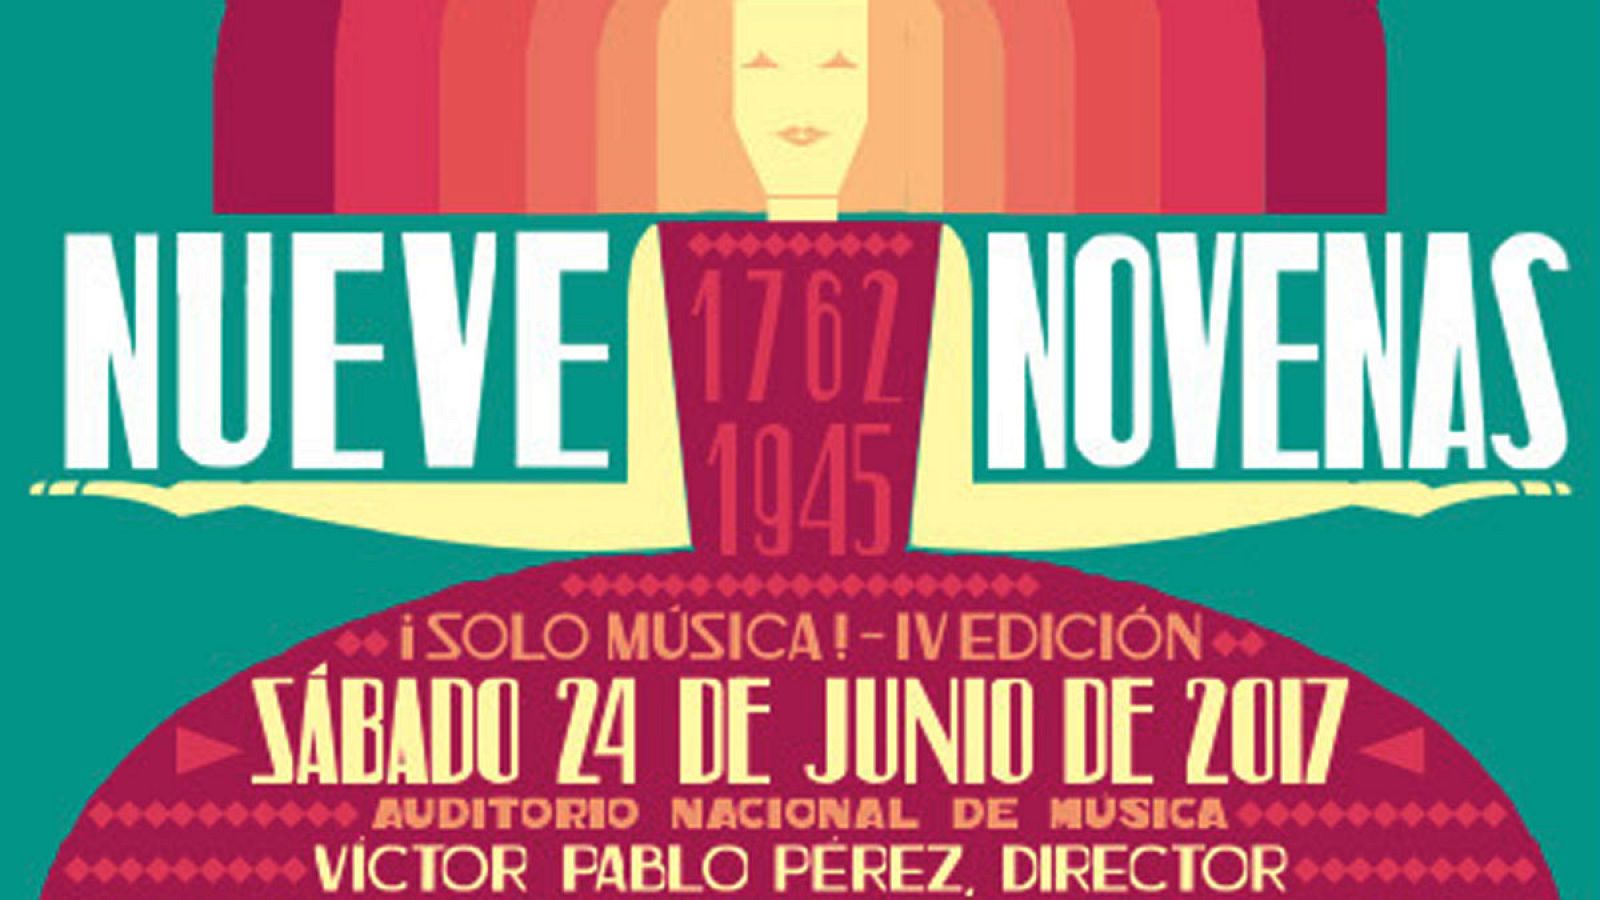 Cartel anunciador del evento "¡Solo música! - Nueve novenas"